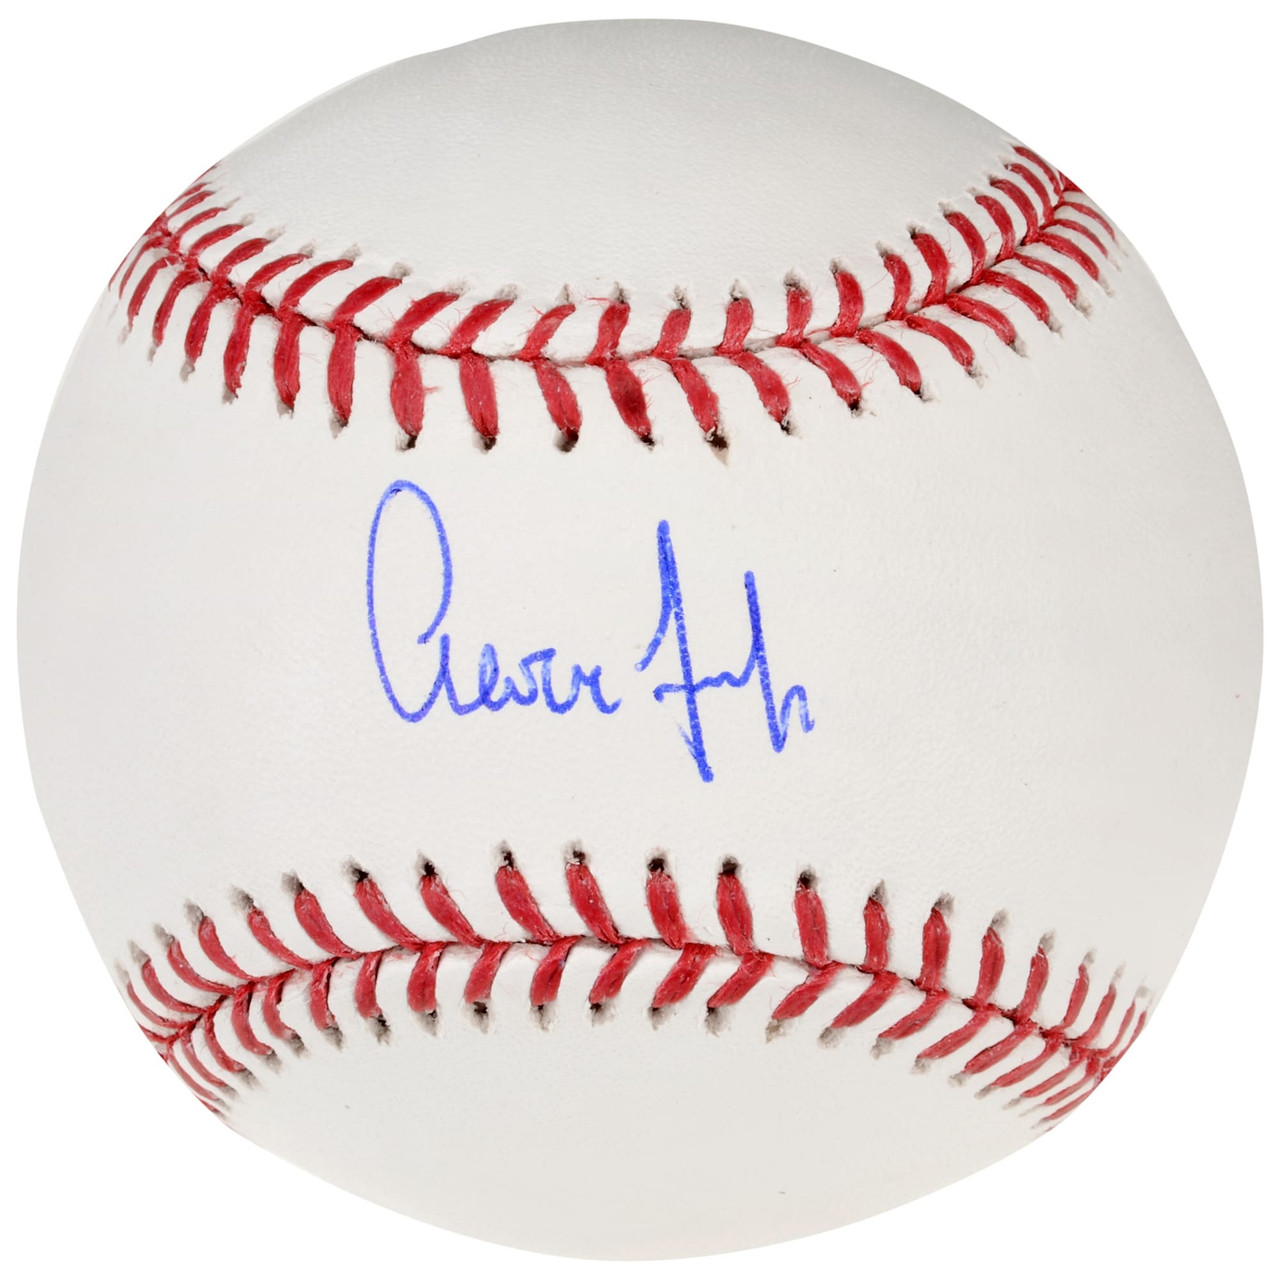 Aaron Judge Autographed Official Major League Baseball - Detroit City Sports